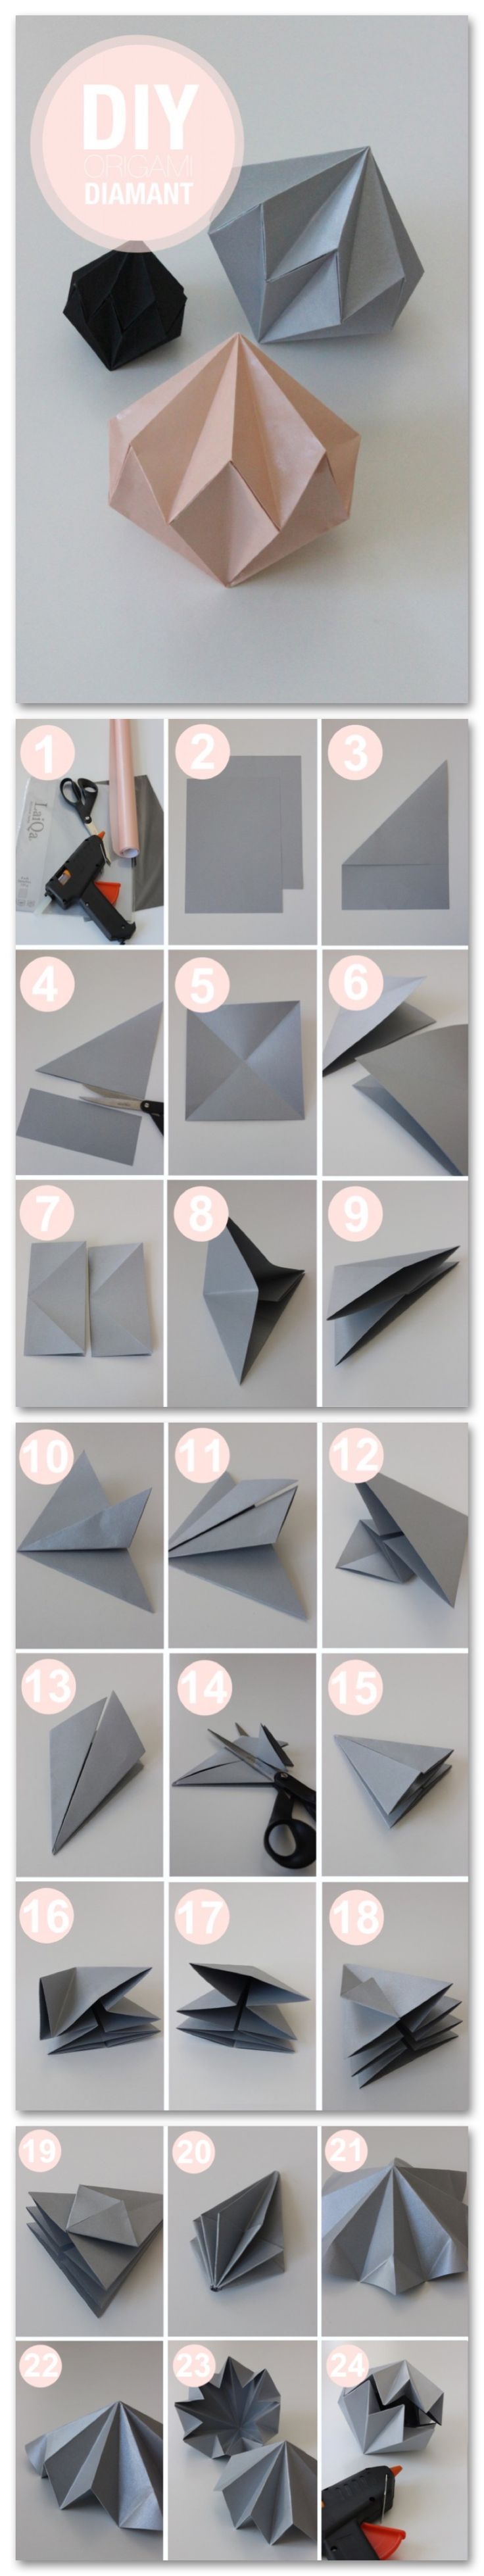 diamante de origami paso a paso